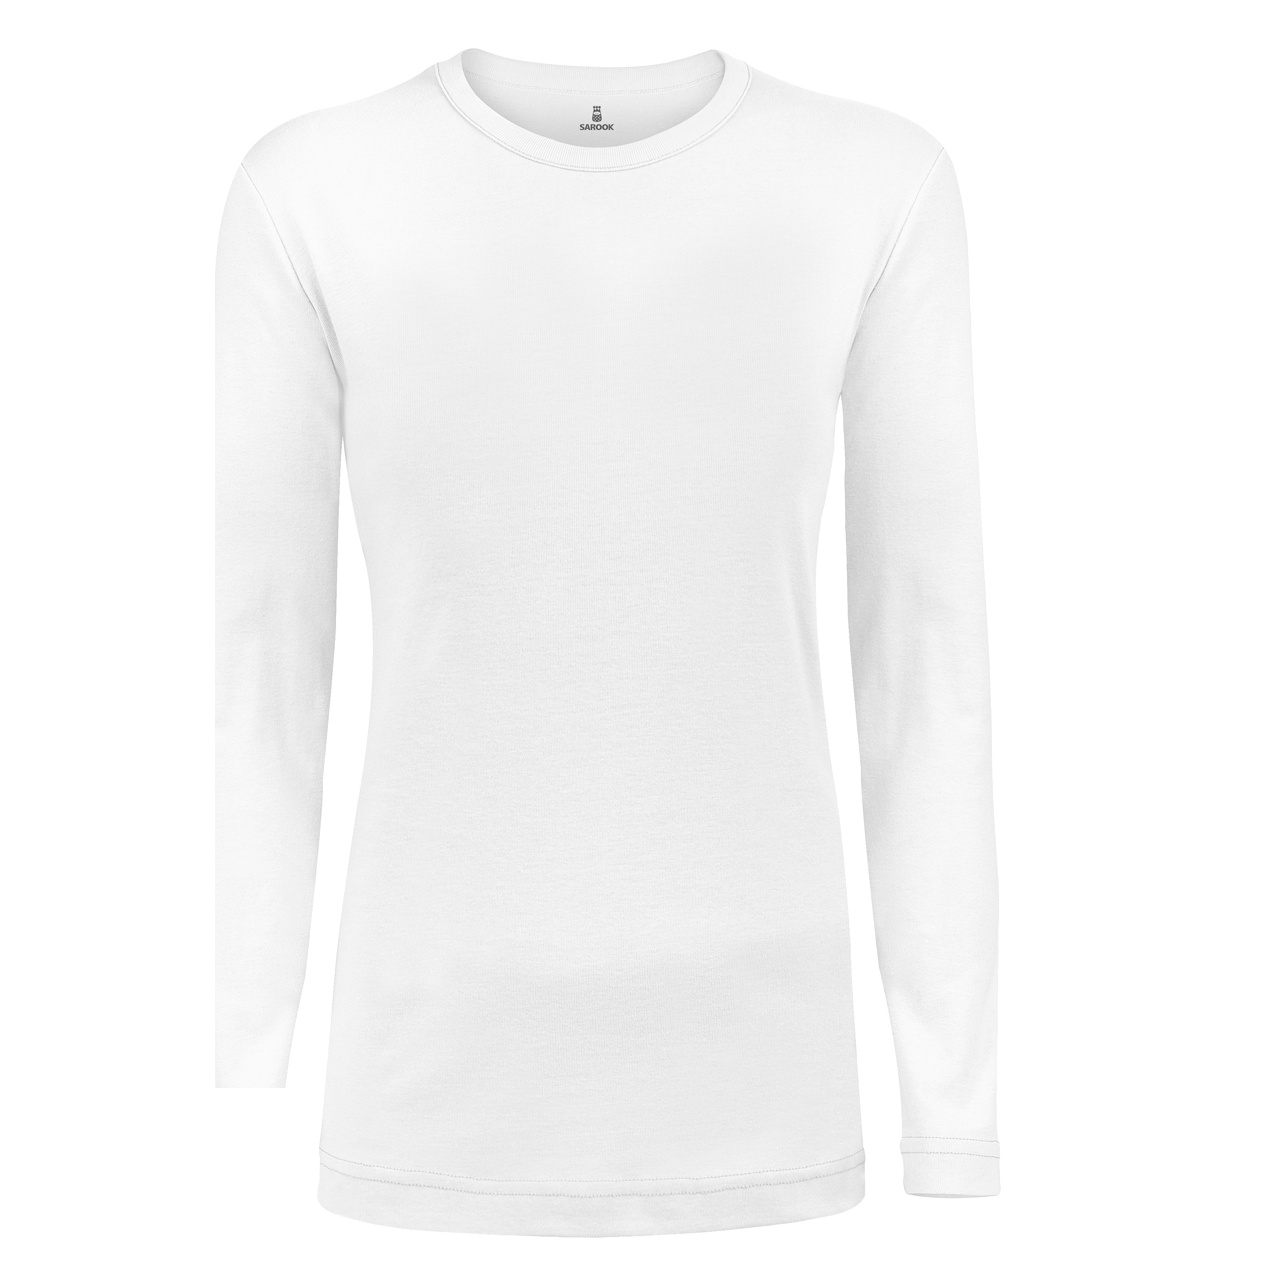 تی شرت آستین بلند زنانه ساروک مدل SZYUFR03 رنگ سفید